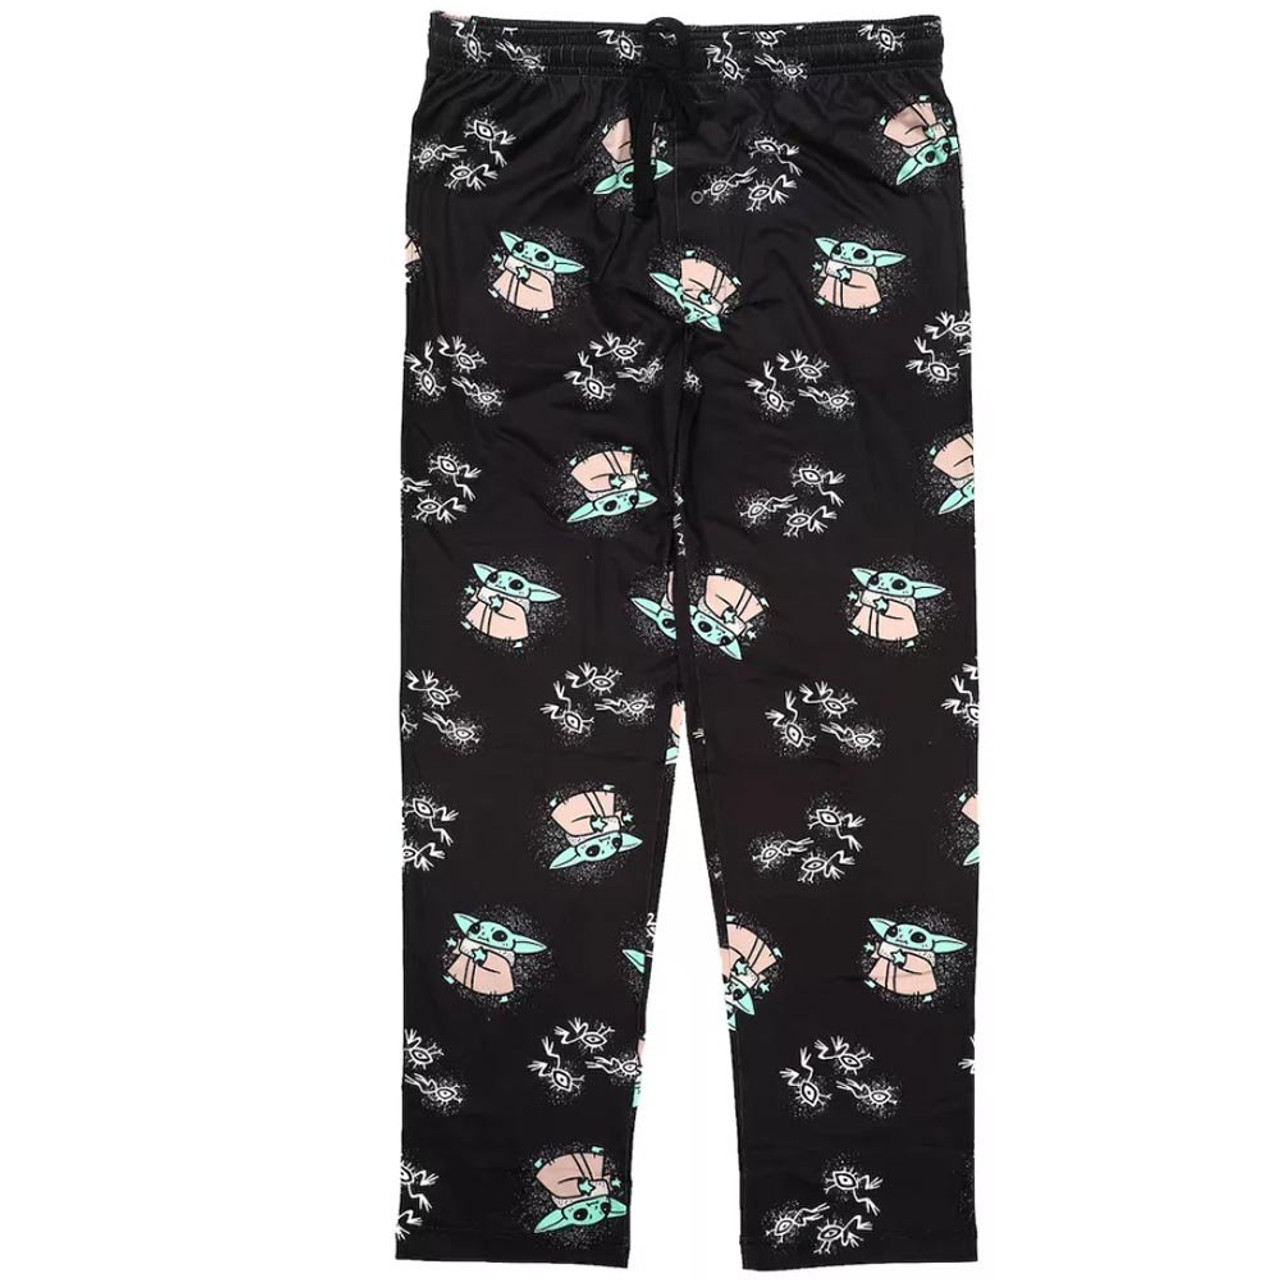 STAR WARS MANDALORIAN AOP Sleep Pajama Pants-XL 